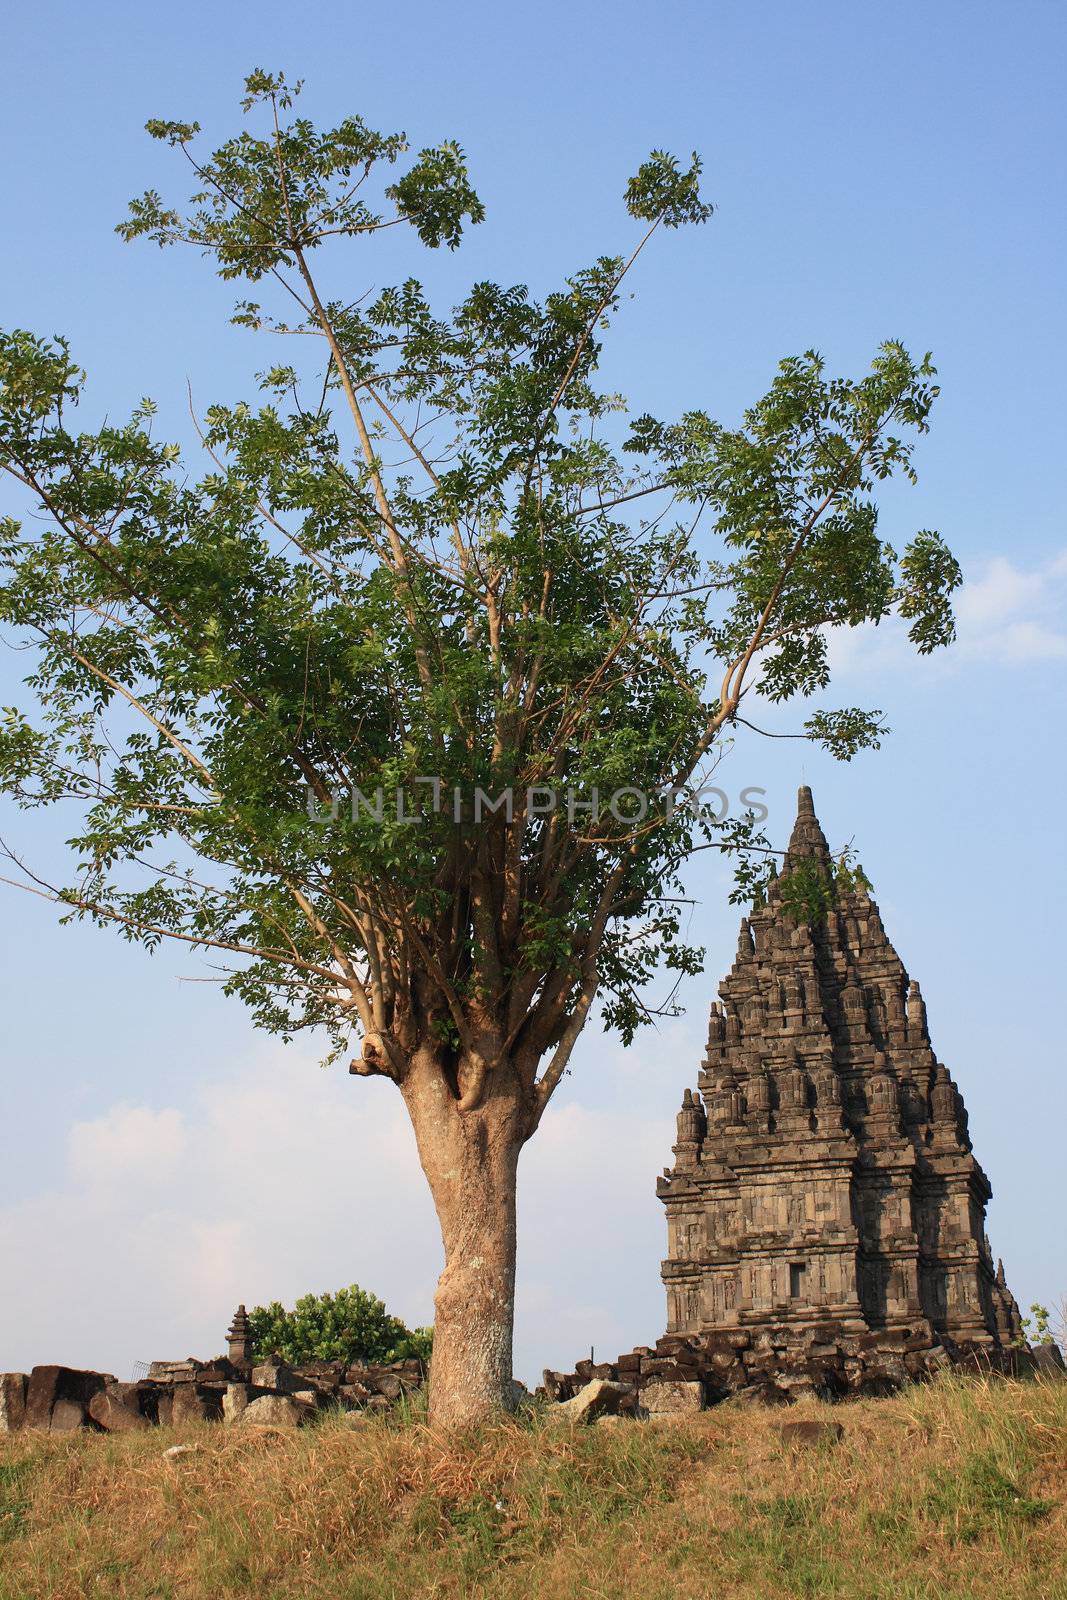 Hindu temple Prambanan by BengLim